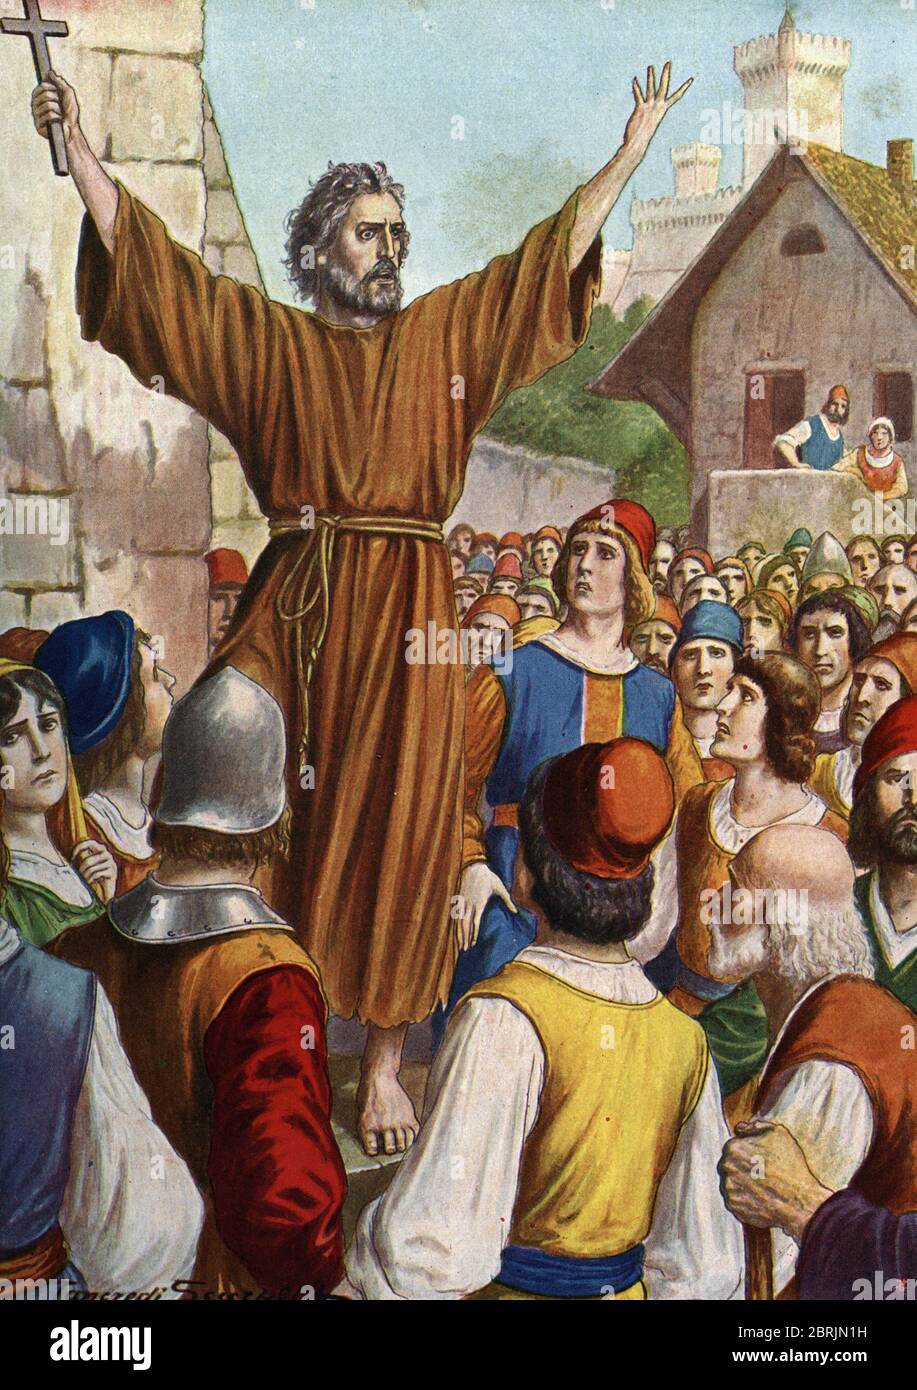 'Dieu le veut' : au concile de Clermont (aujourd'hui Clermont Ferrand (Clermont-Ferrand), en Auvergne), Pierre l'Ermite (1050-1115) preche la premiere Stock Photo